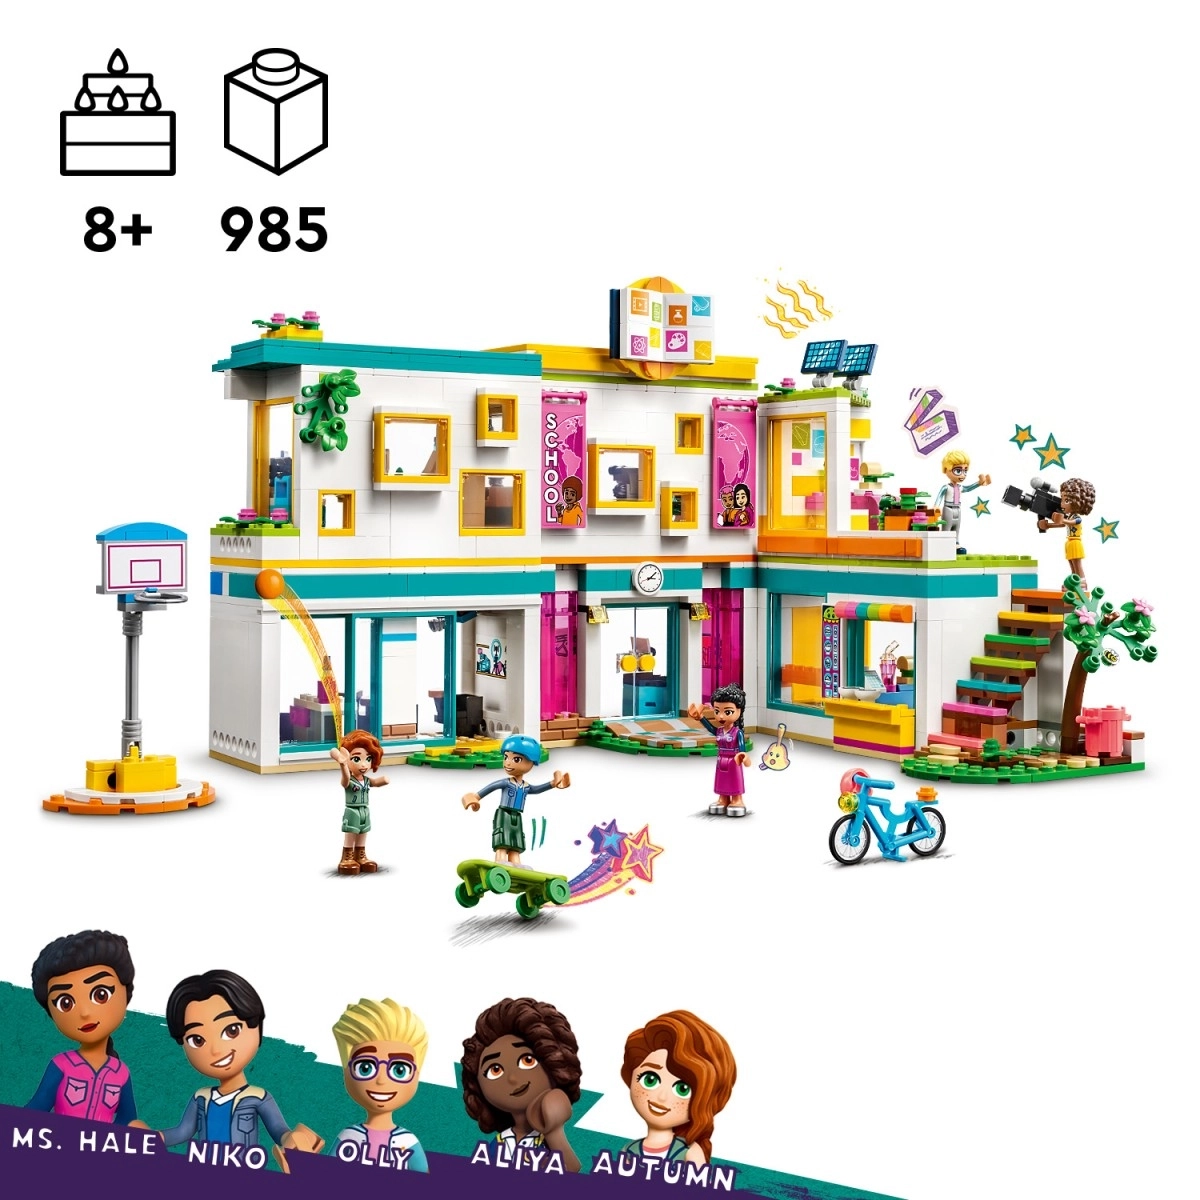 LEGO Friends Heartlake International School Building Toy Set, 985 Pieces, Multicolour, 8Y+